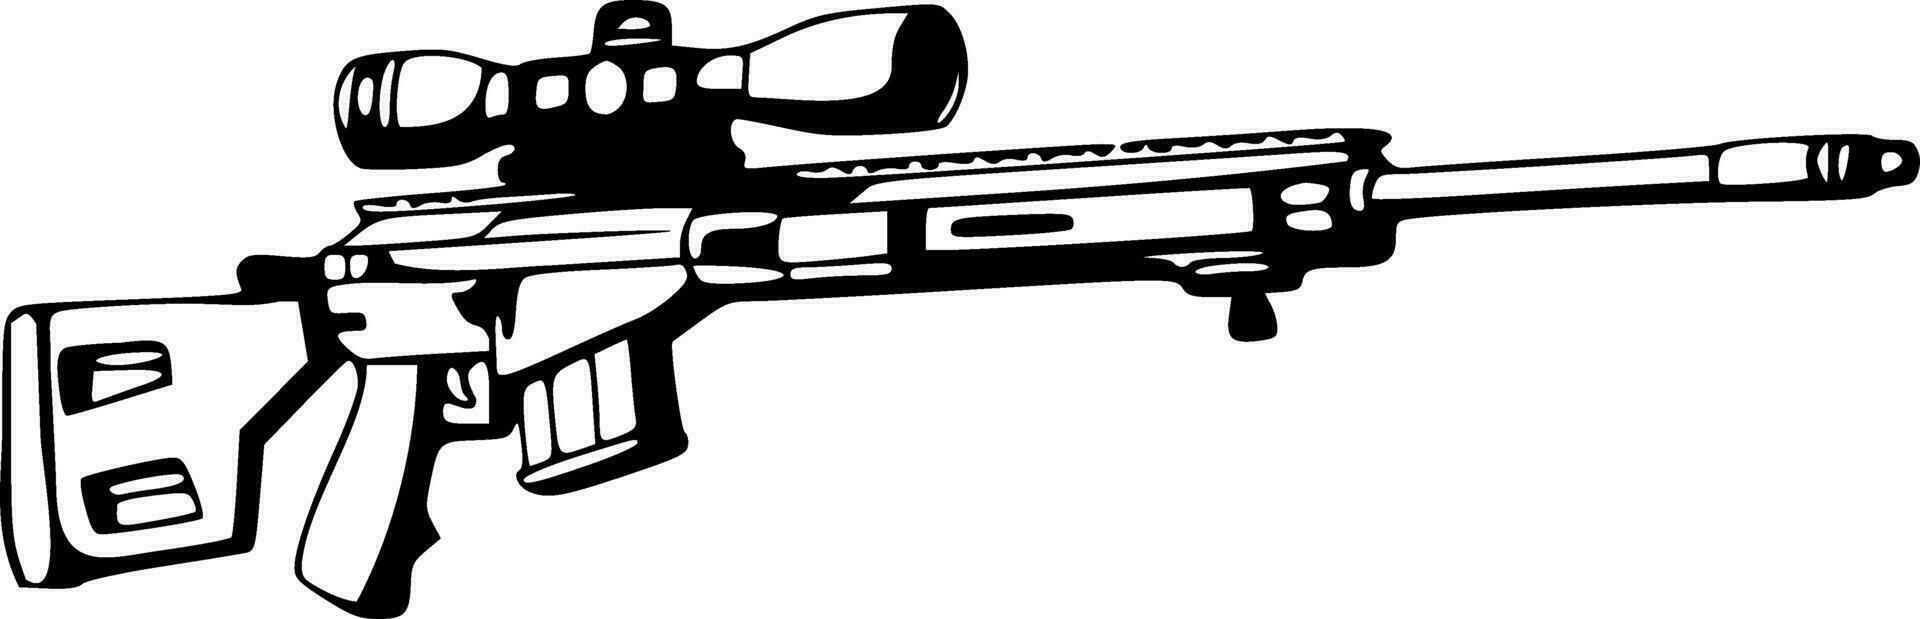 Franco atirador rifle arma de fogo Preto esboços vetor ilustração